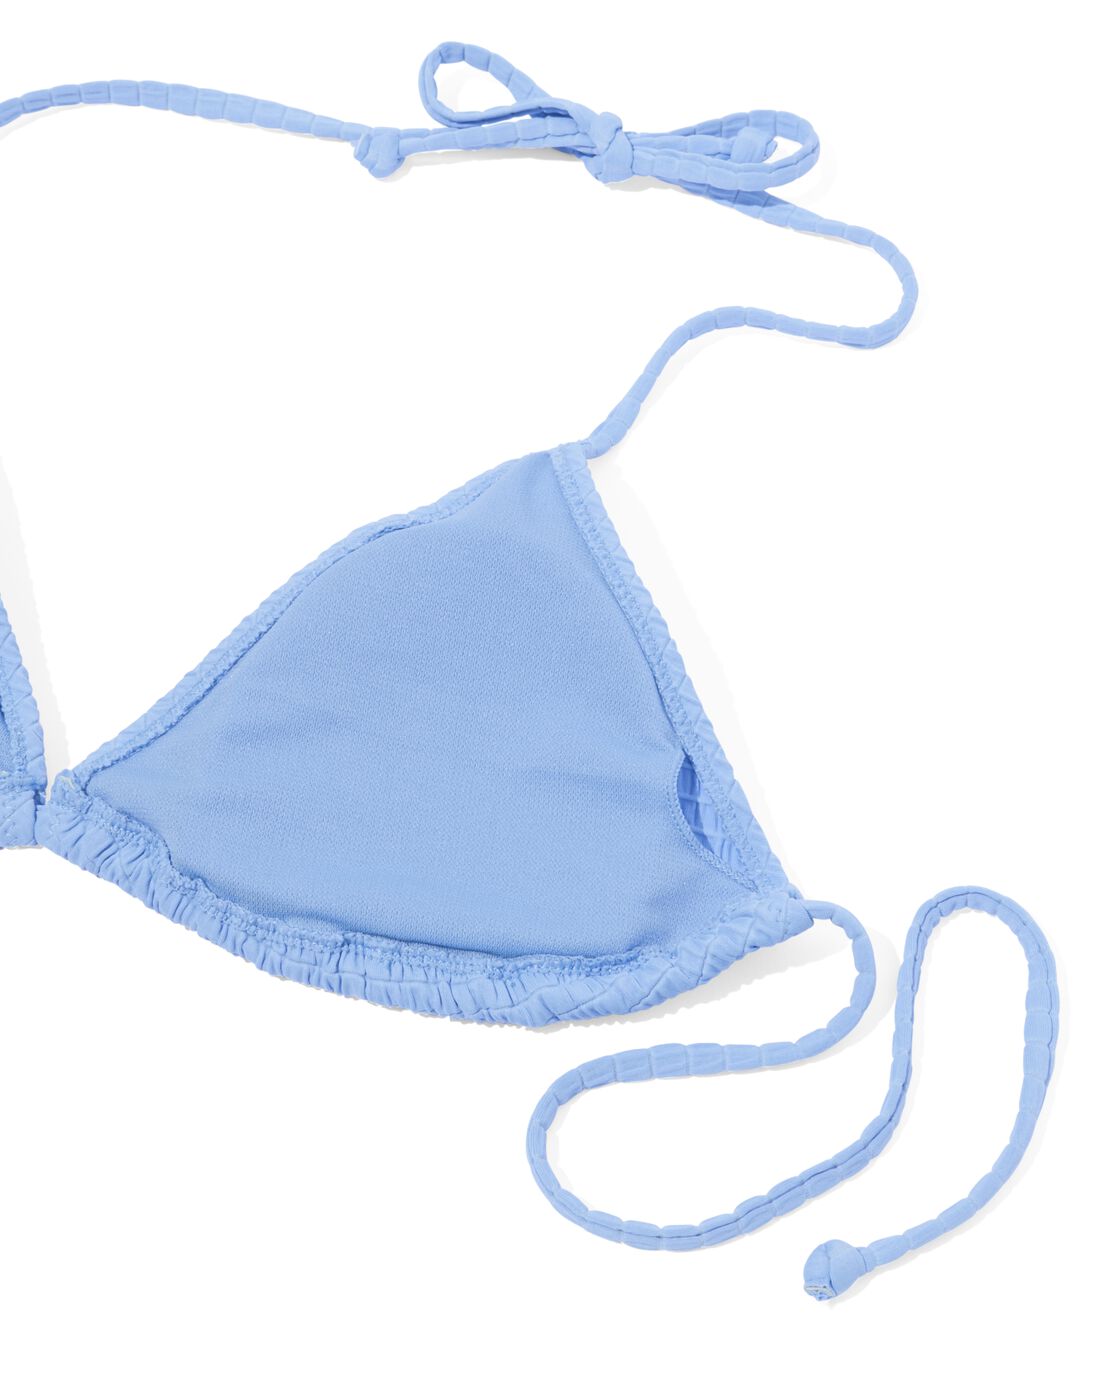 HEMA Dames Triangel Bikinitop Lichtblauw (lichtblauw)